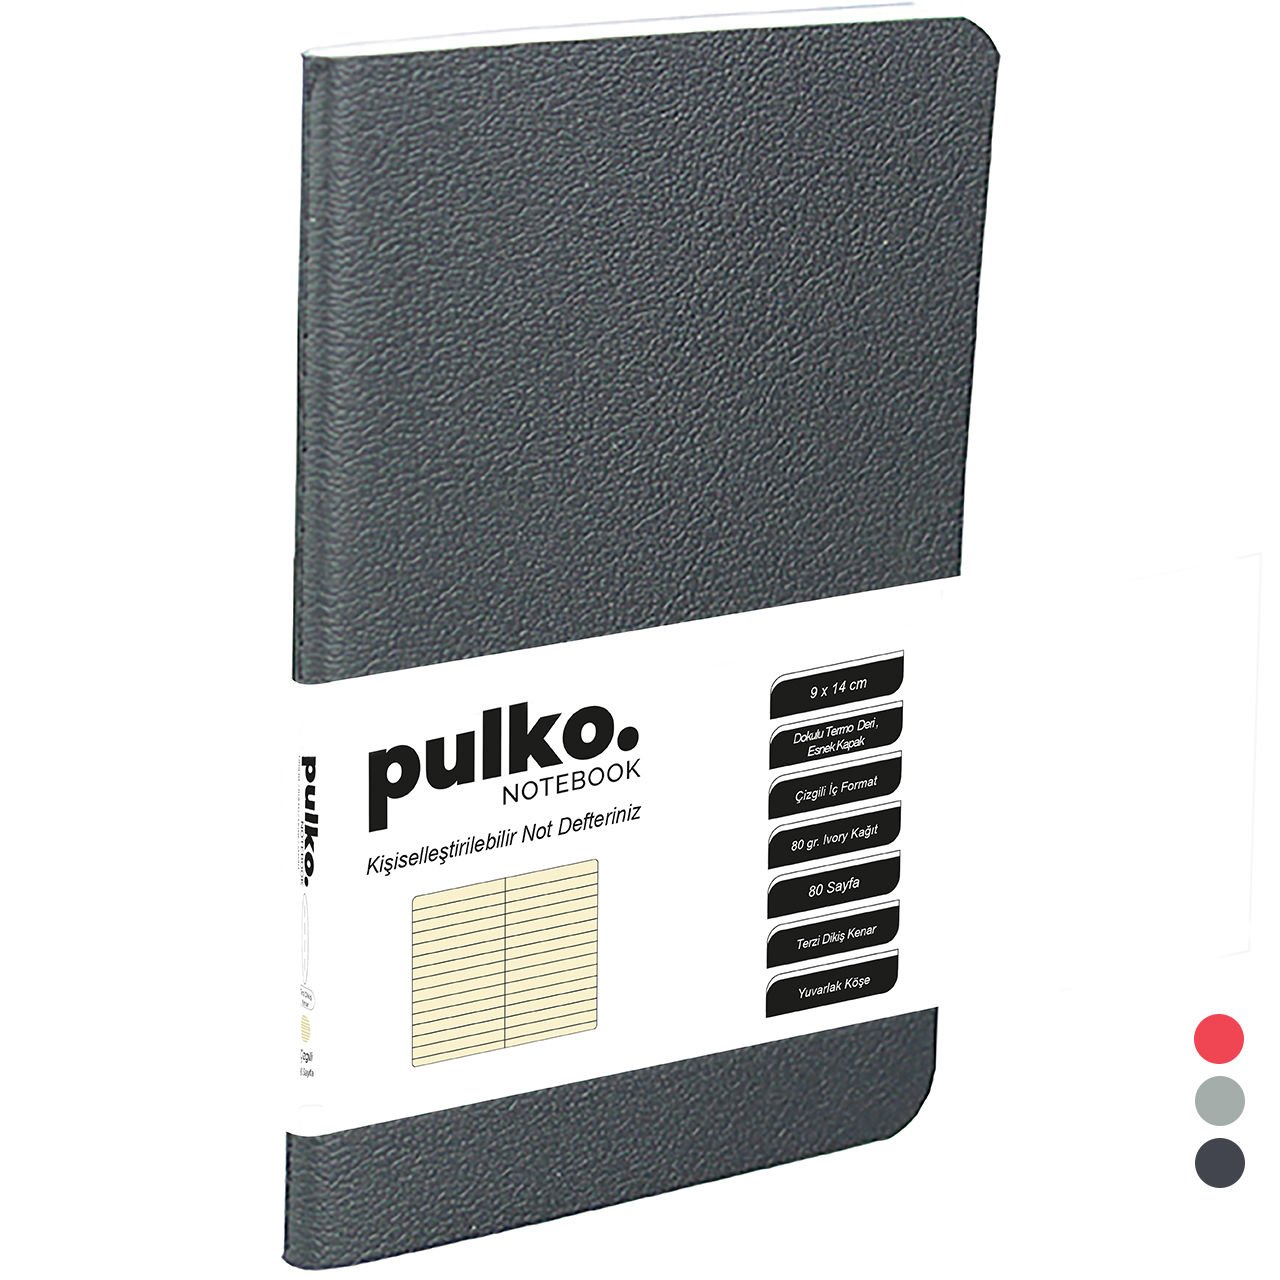 PULKO Notebook Not Defteri, (9x14cm), Terzi Dikiş, Esnek Kapak, 80 Sayfa, Krem Kağıt, Çizgili, 031,